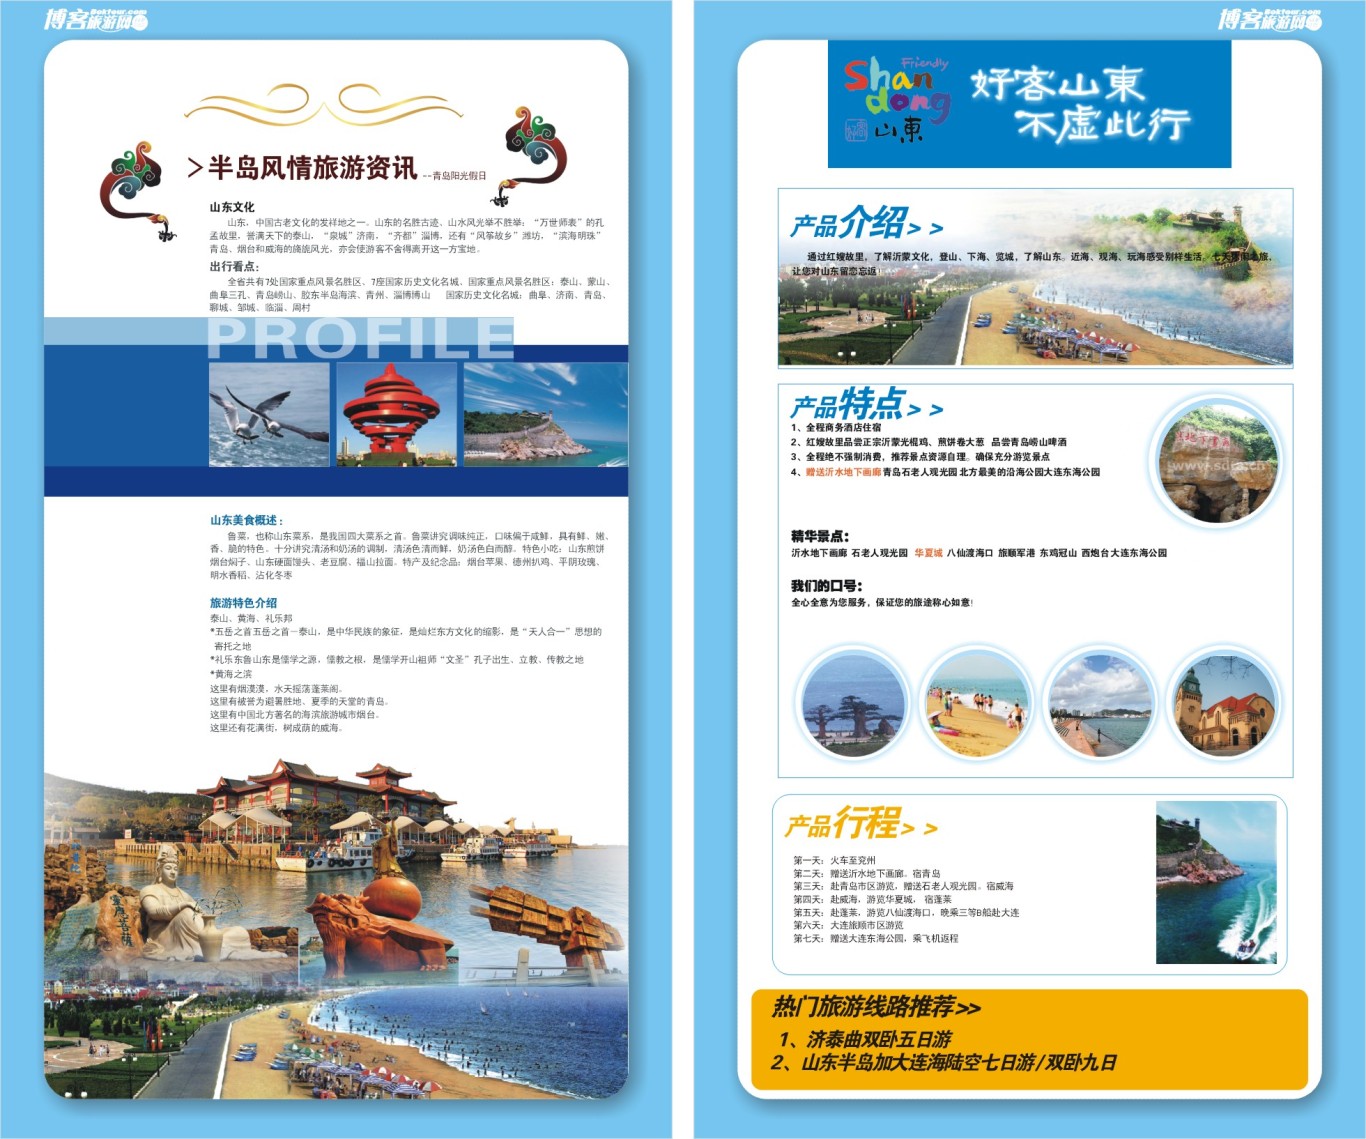 博客旅游网宣传手册设计图9